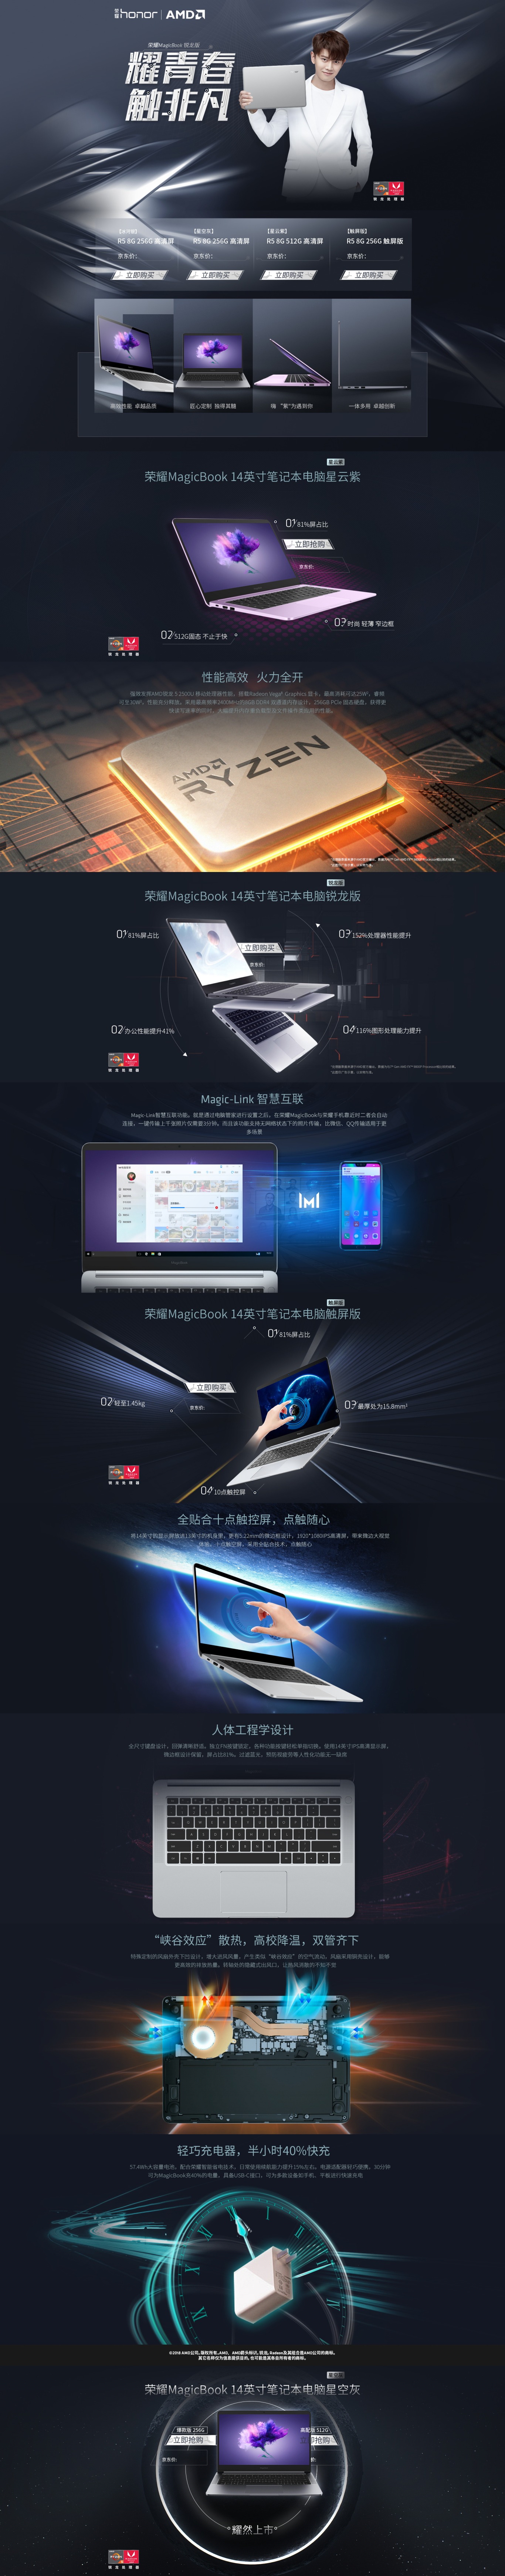 AMD/榮耀活動頁圖0